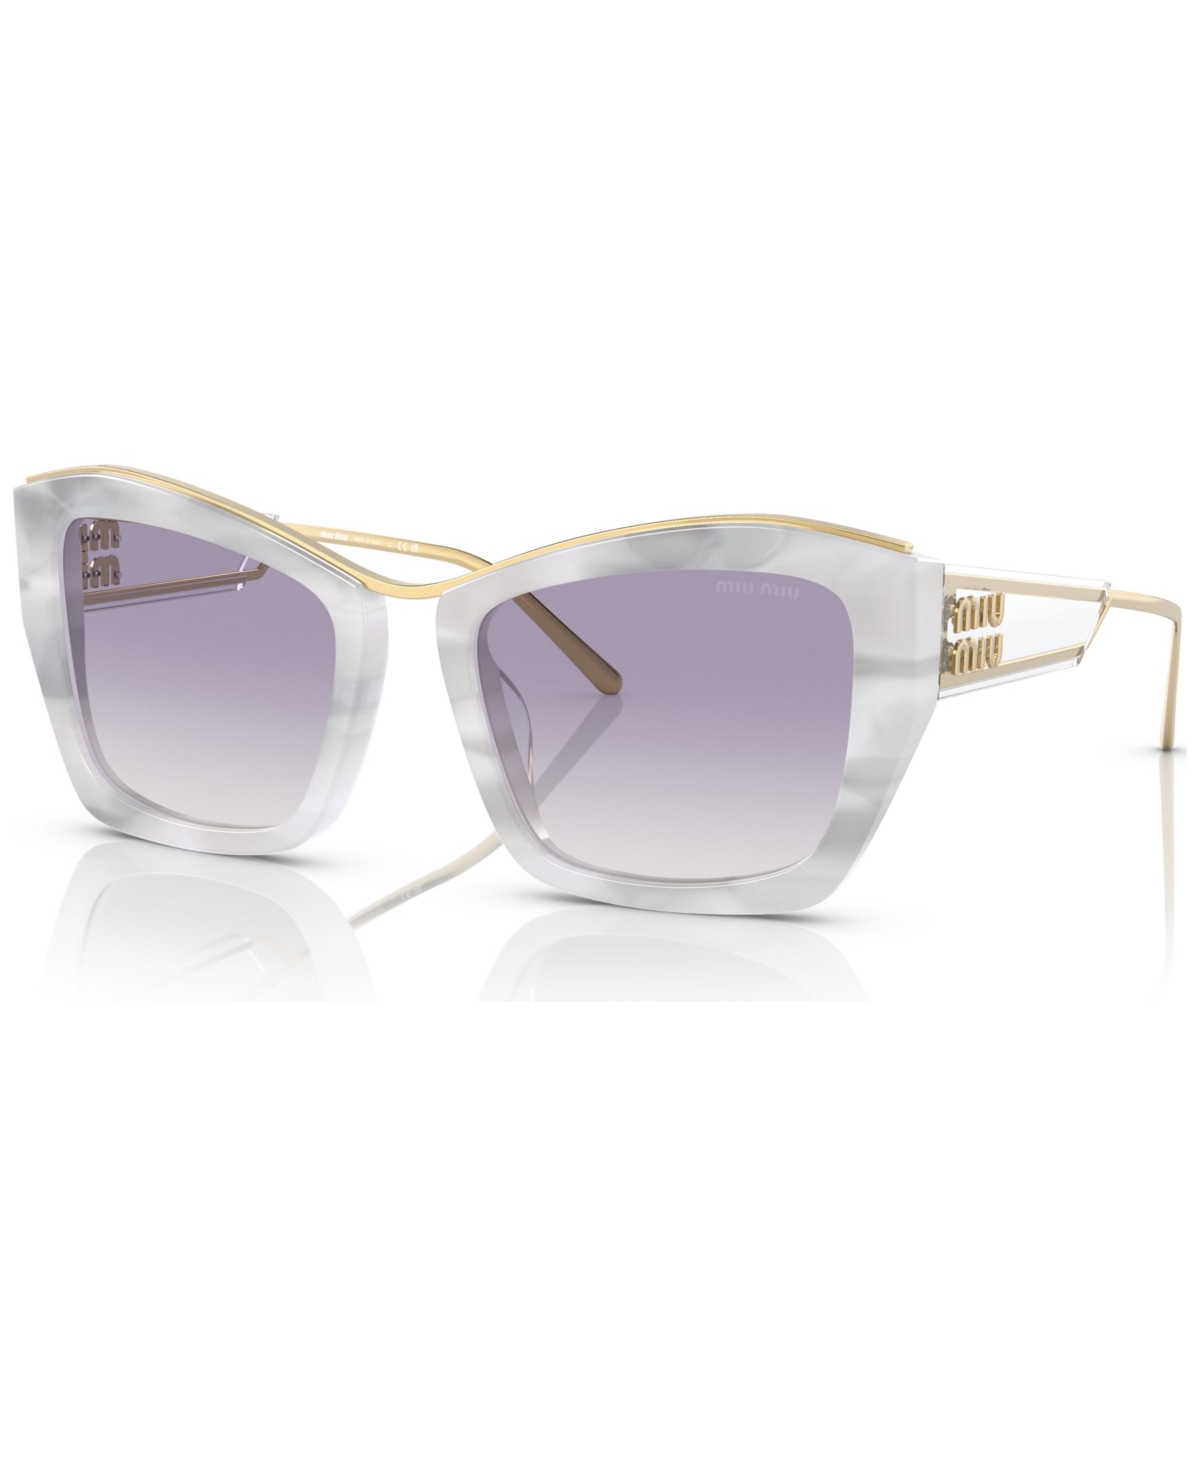 Miu Miu Women's Sunglasses, Mu 02ys In White